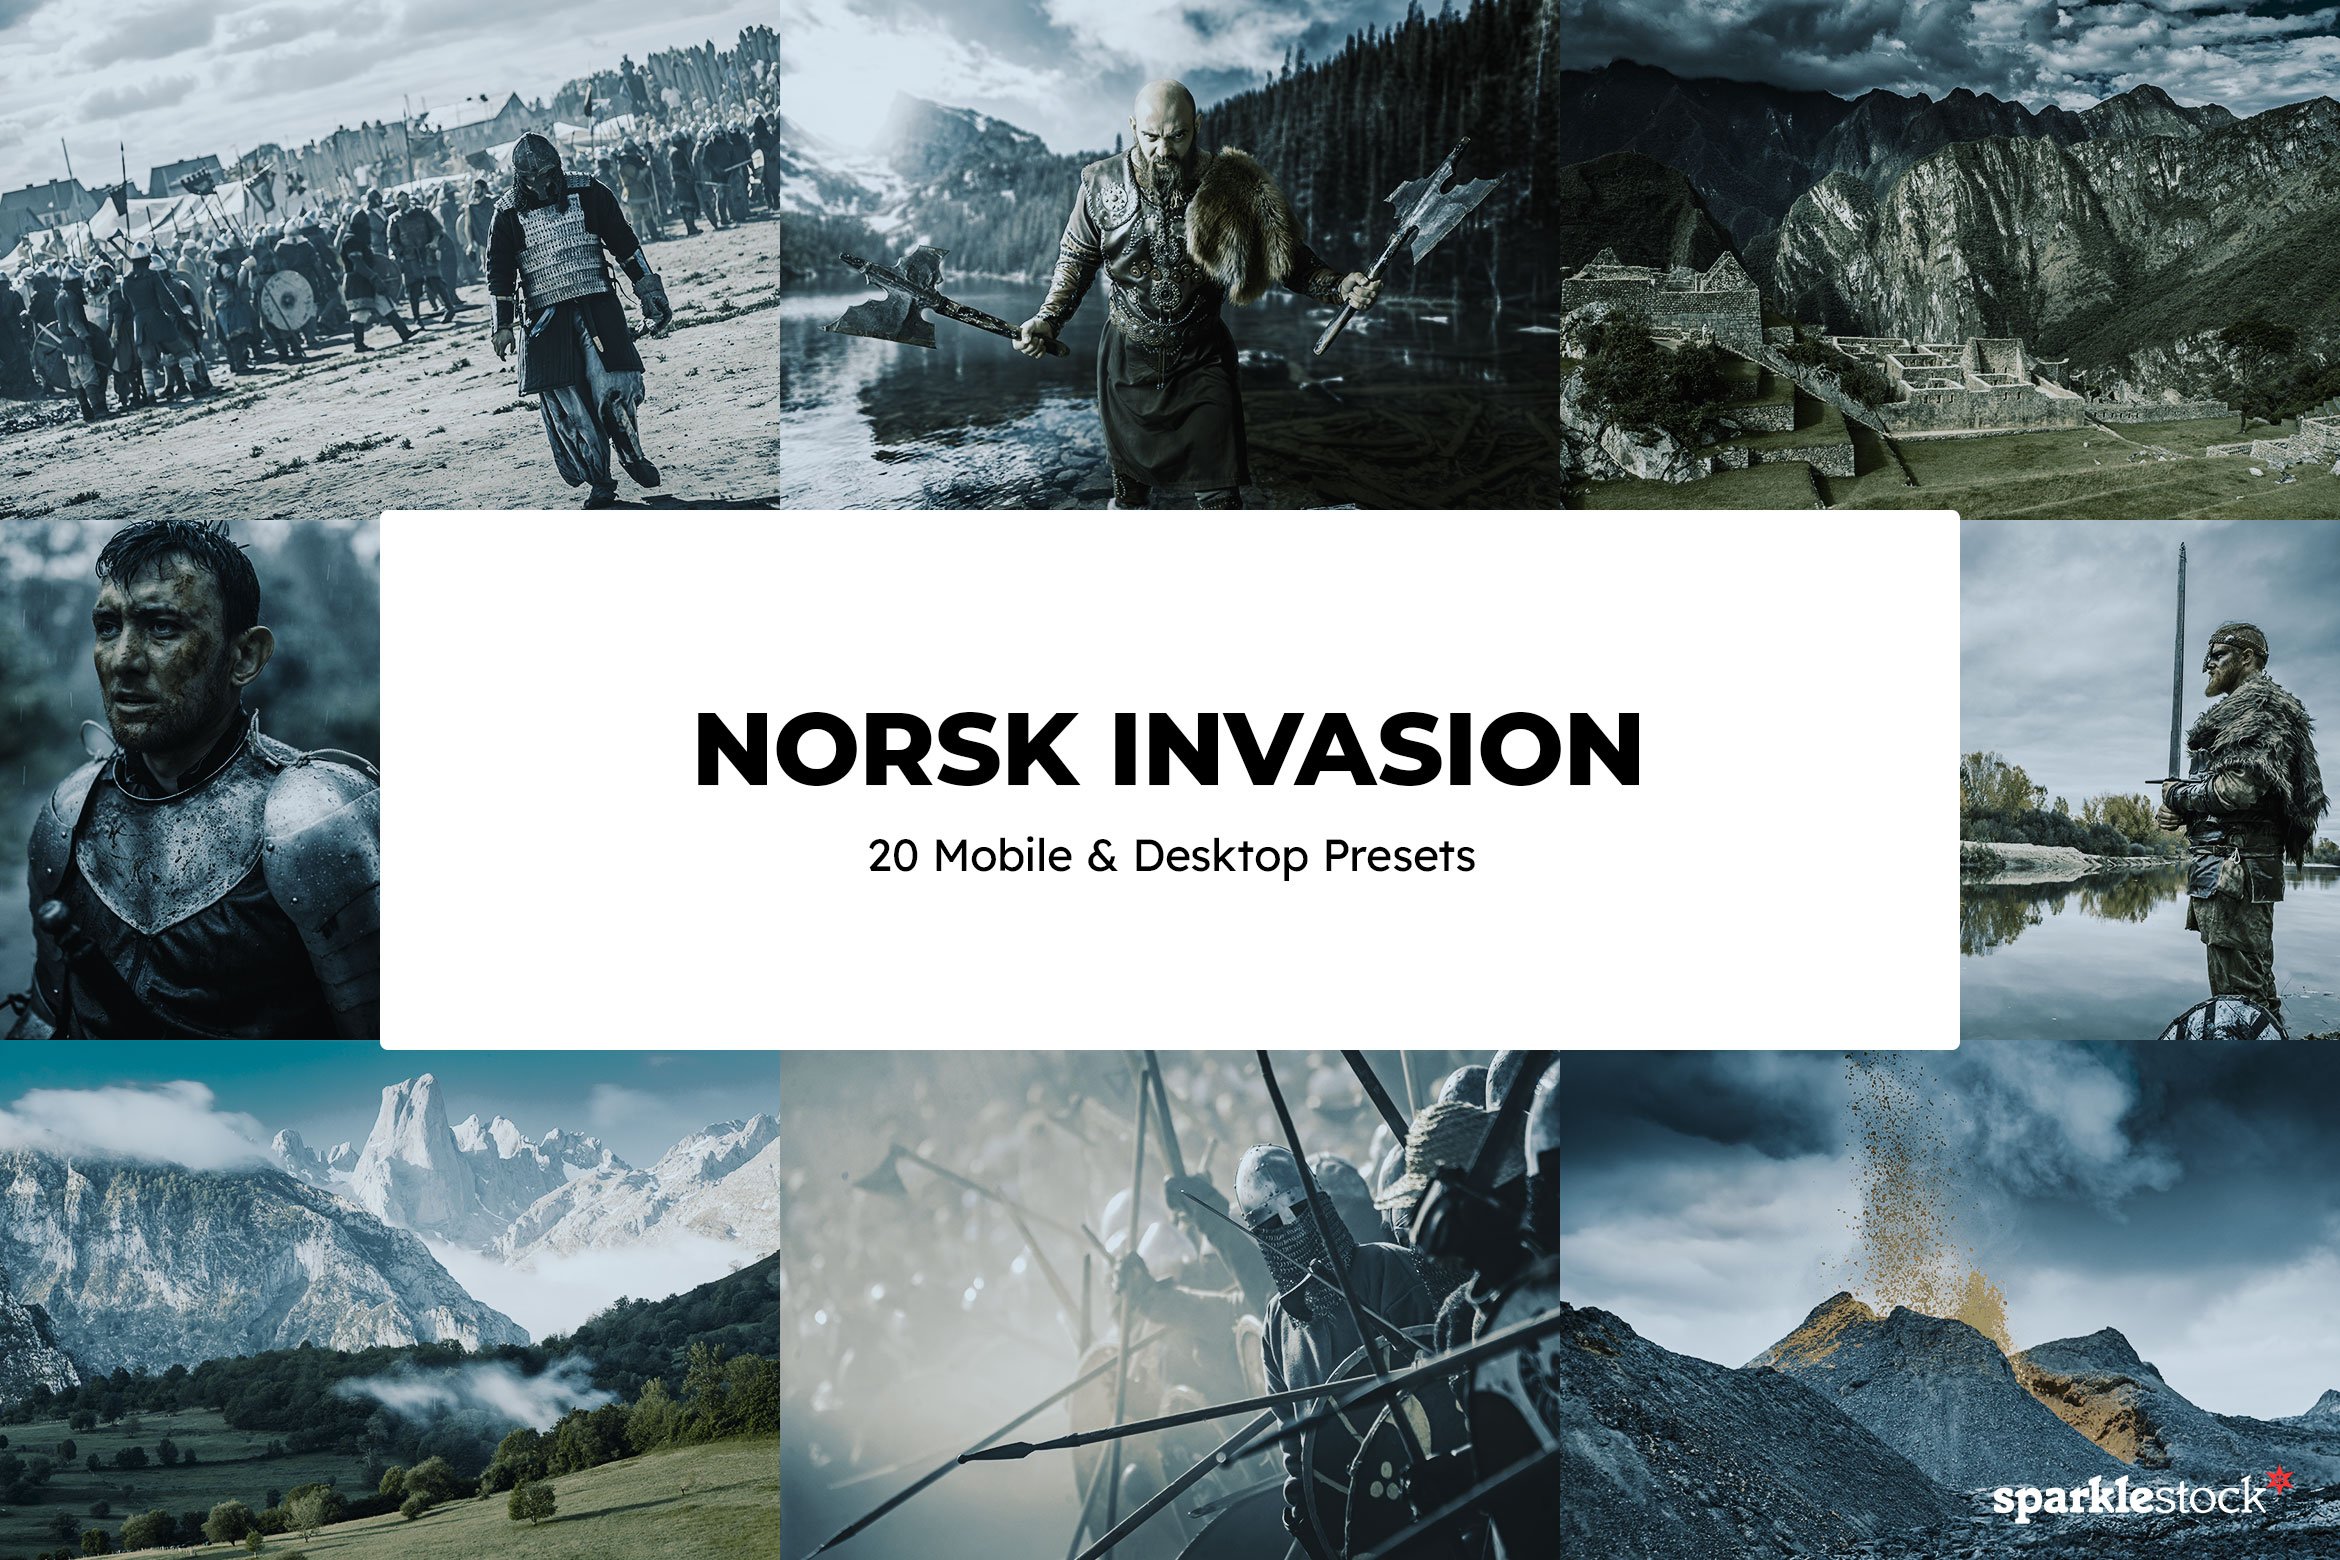 20 Norsk Invasion Lightroom Presetscover image.